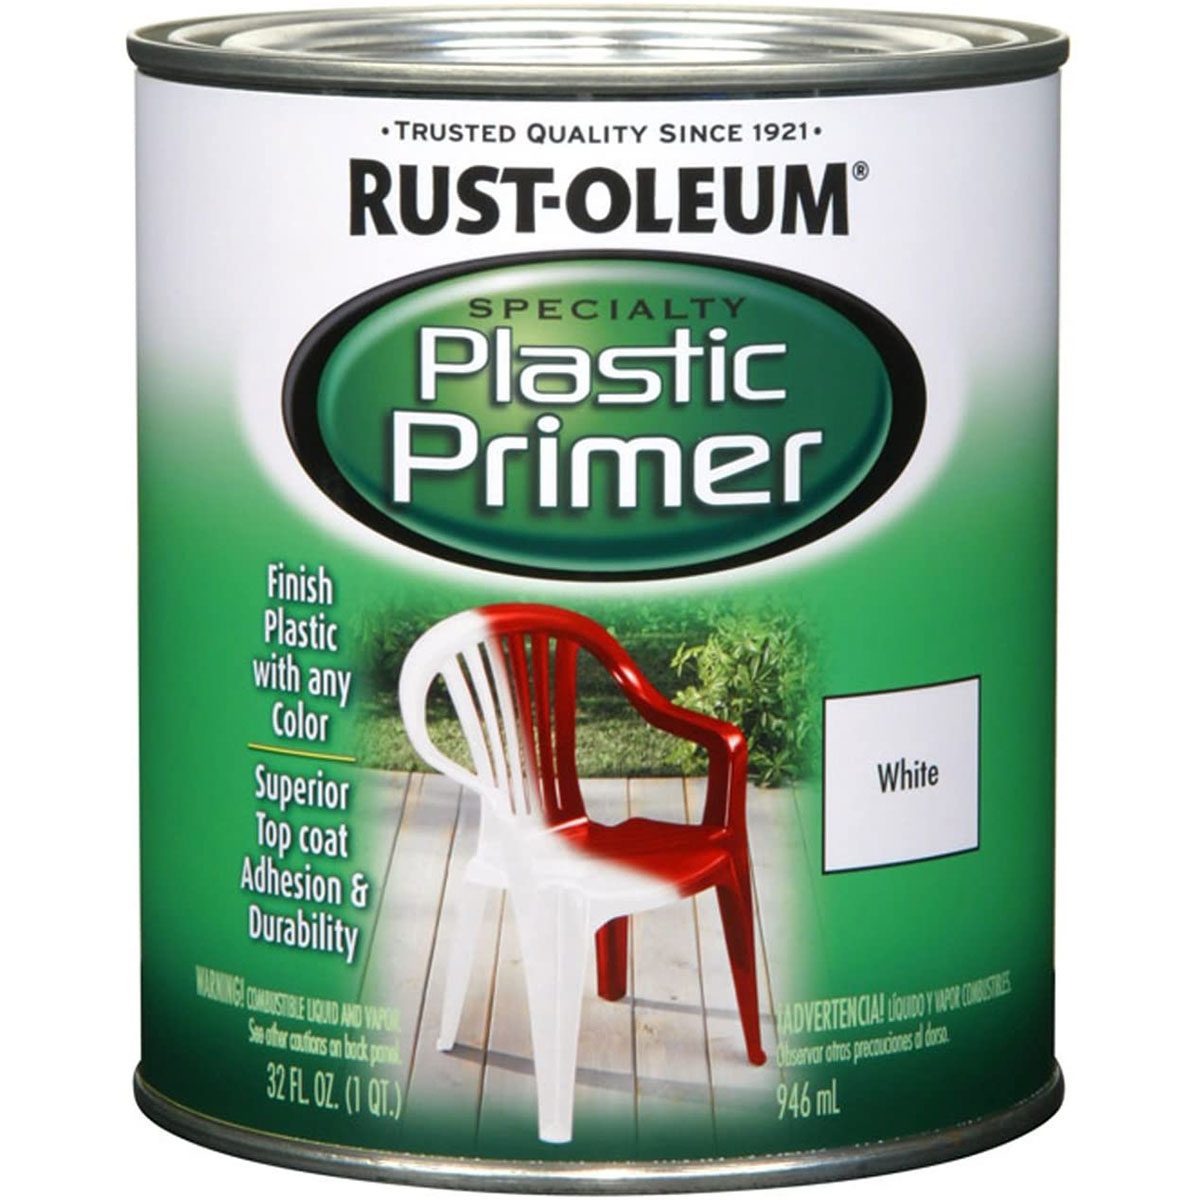 Rust Oleum Plastic Primer ?fit=696%2C696